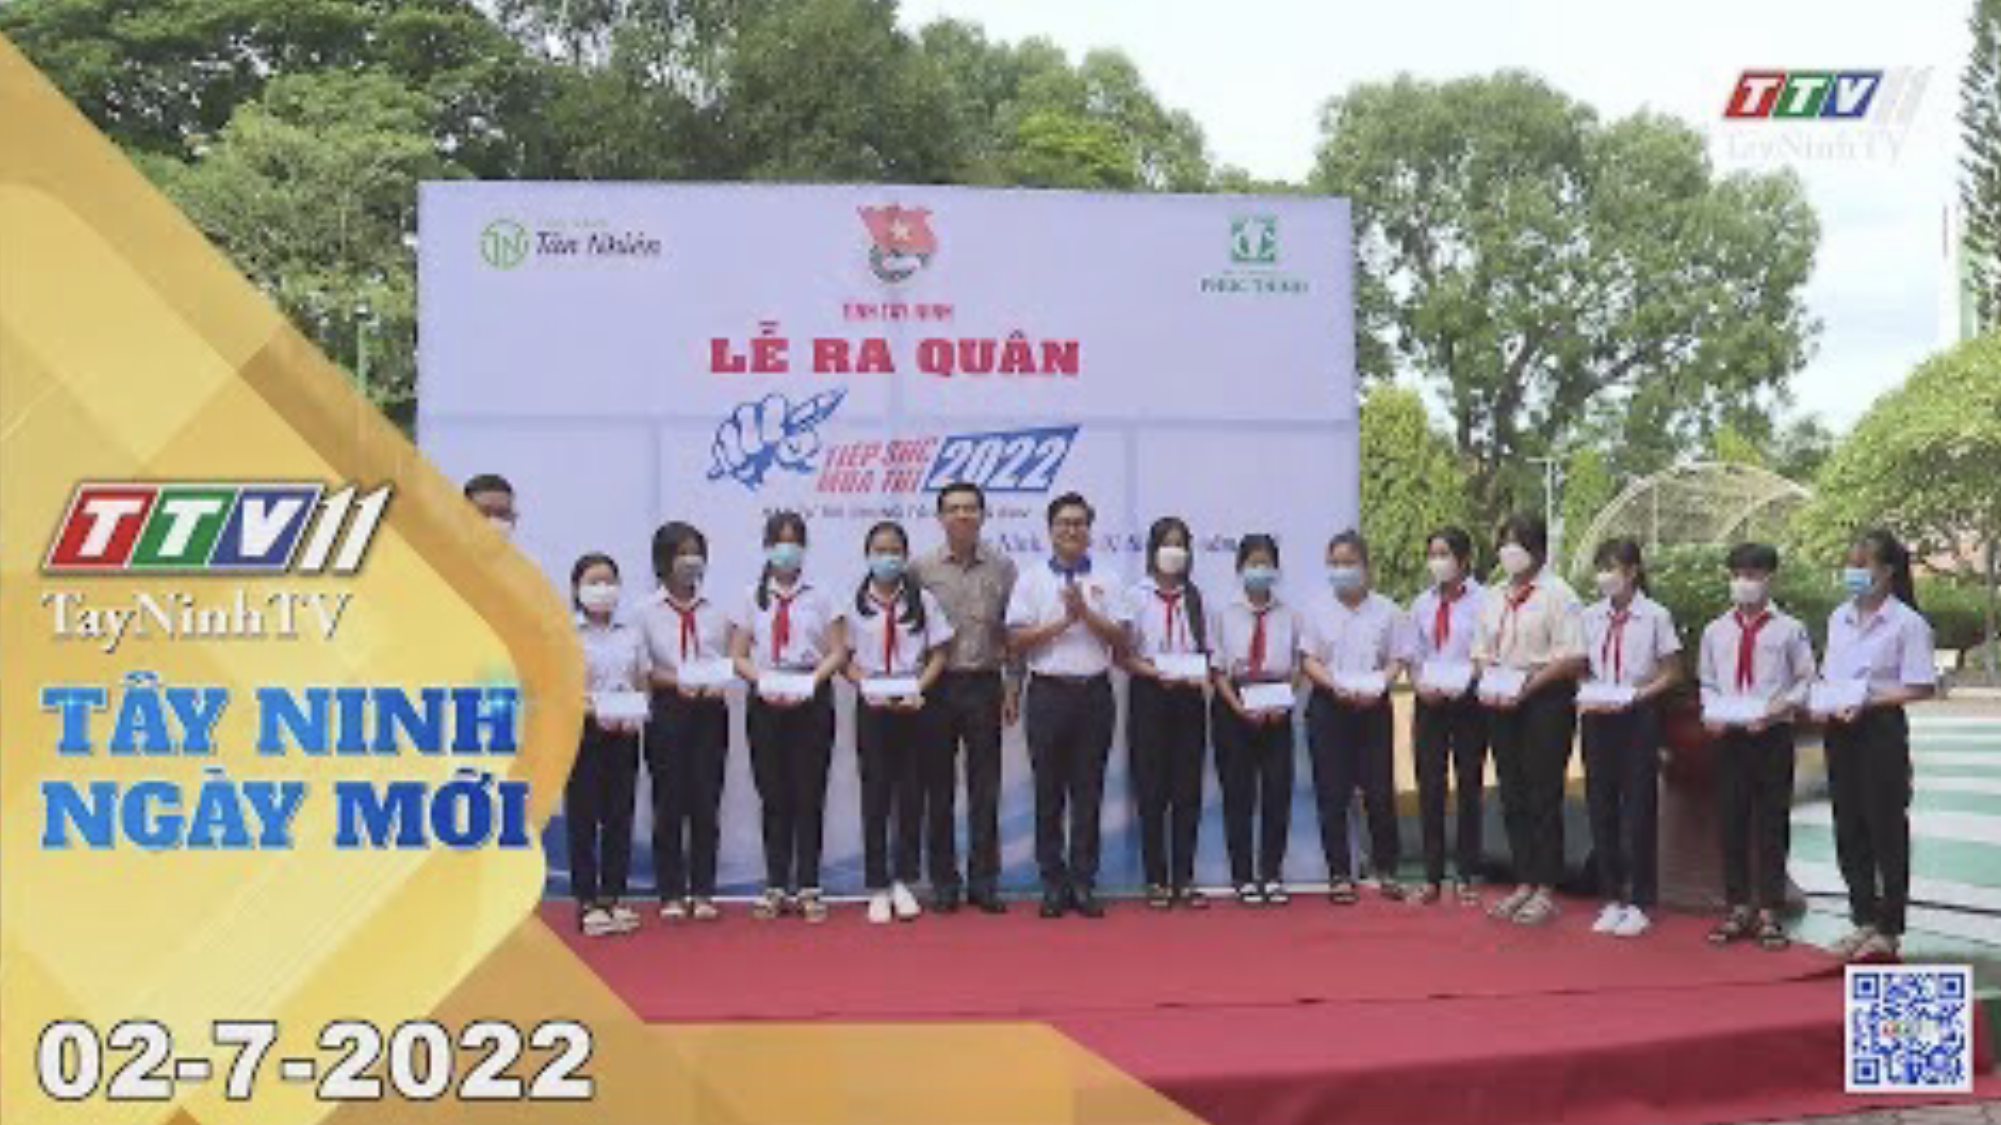 Tây Ninh ngày mới 02-7-2022 | Tin tức hôm nay | TayNinhTV